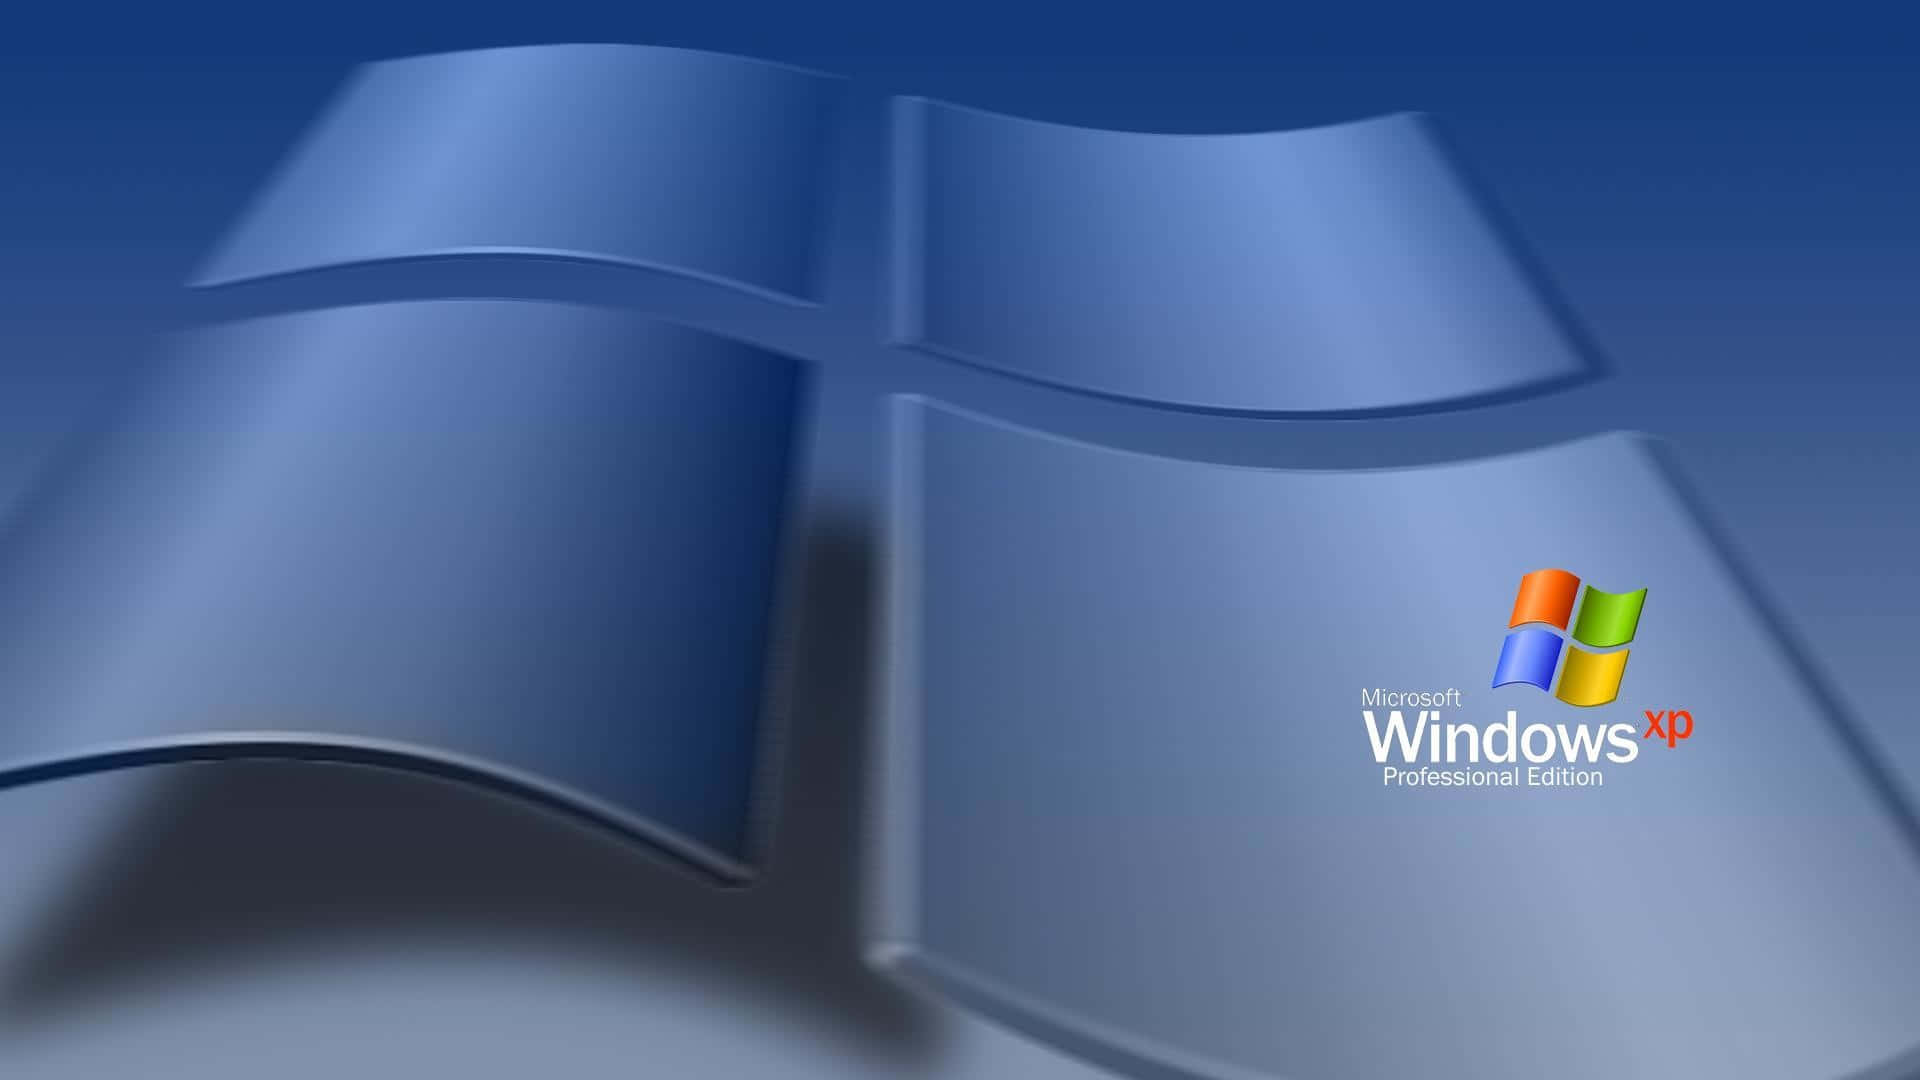 Windows Xp-logo 1920 X 1080 Wallpaper